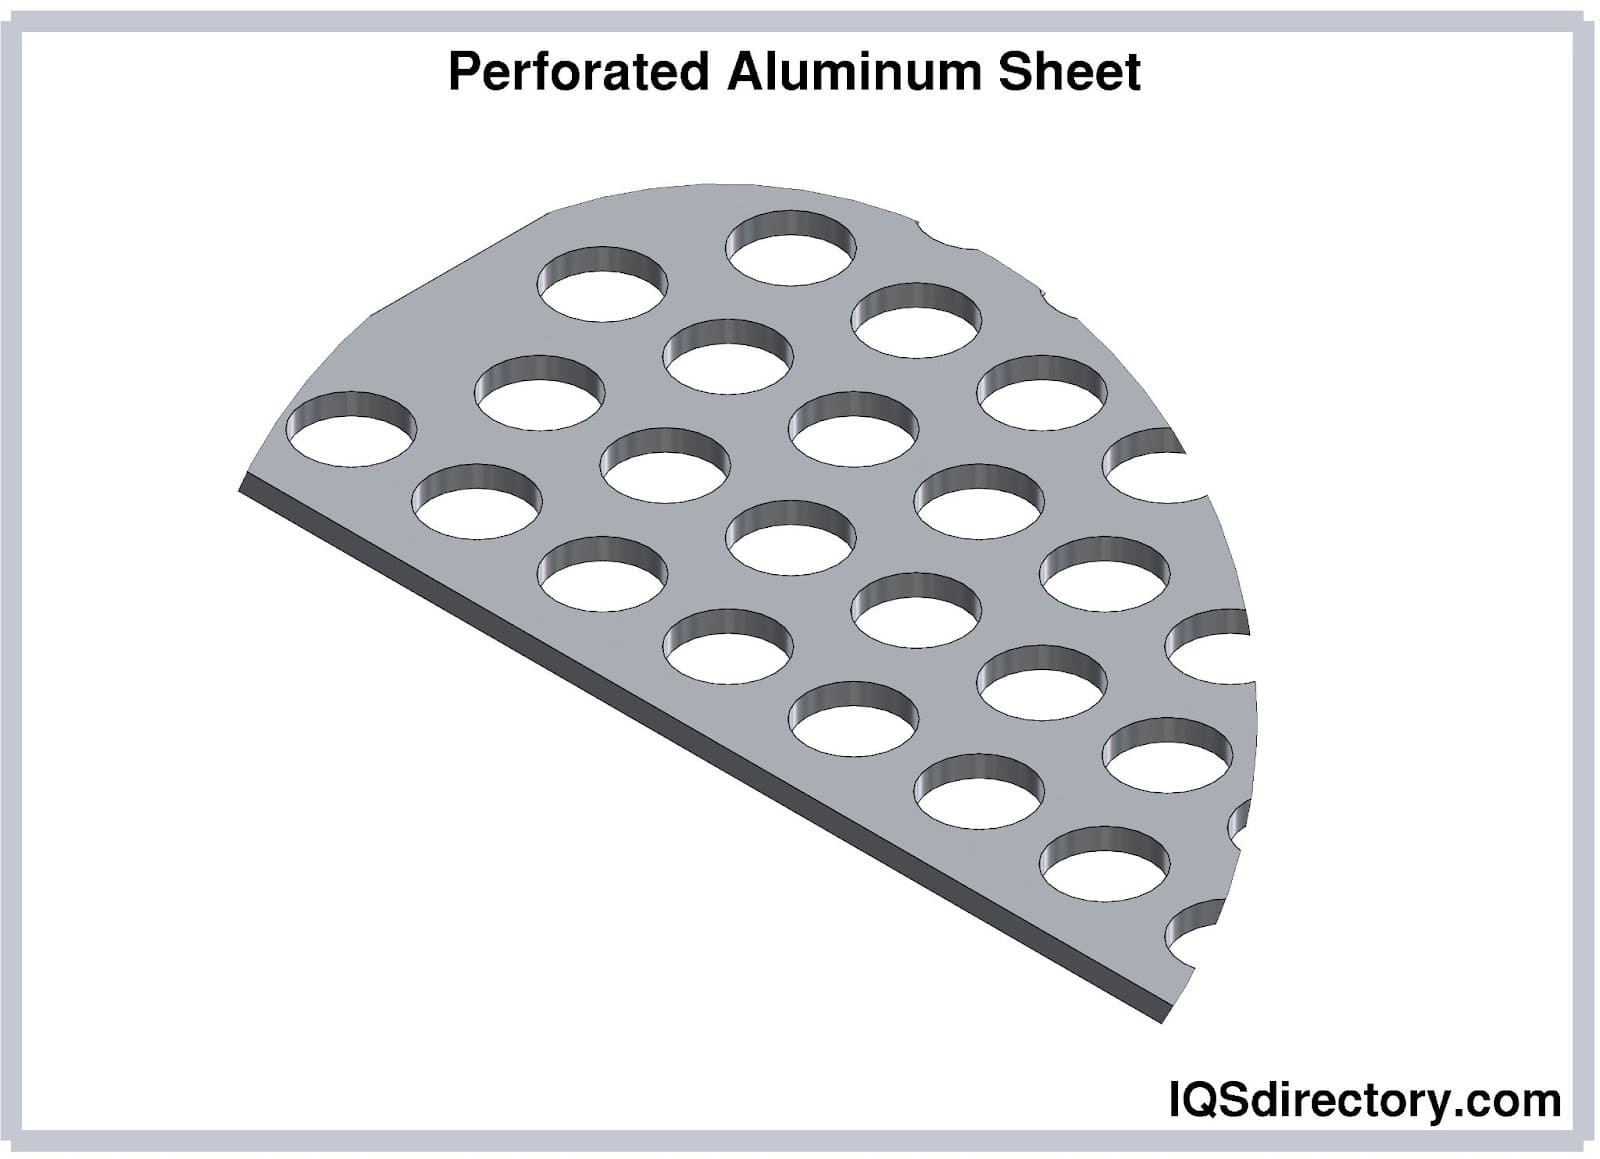 Perforated Aluminum